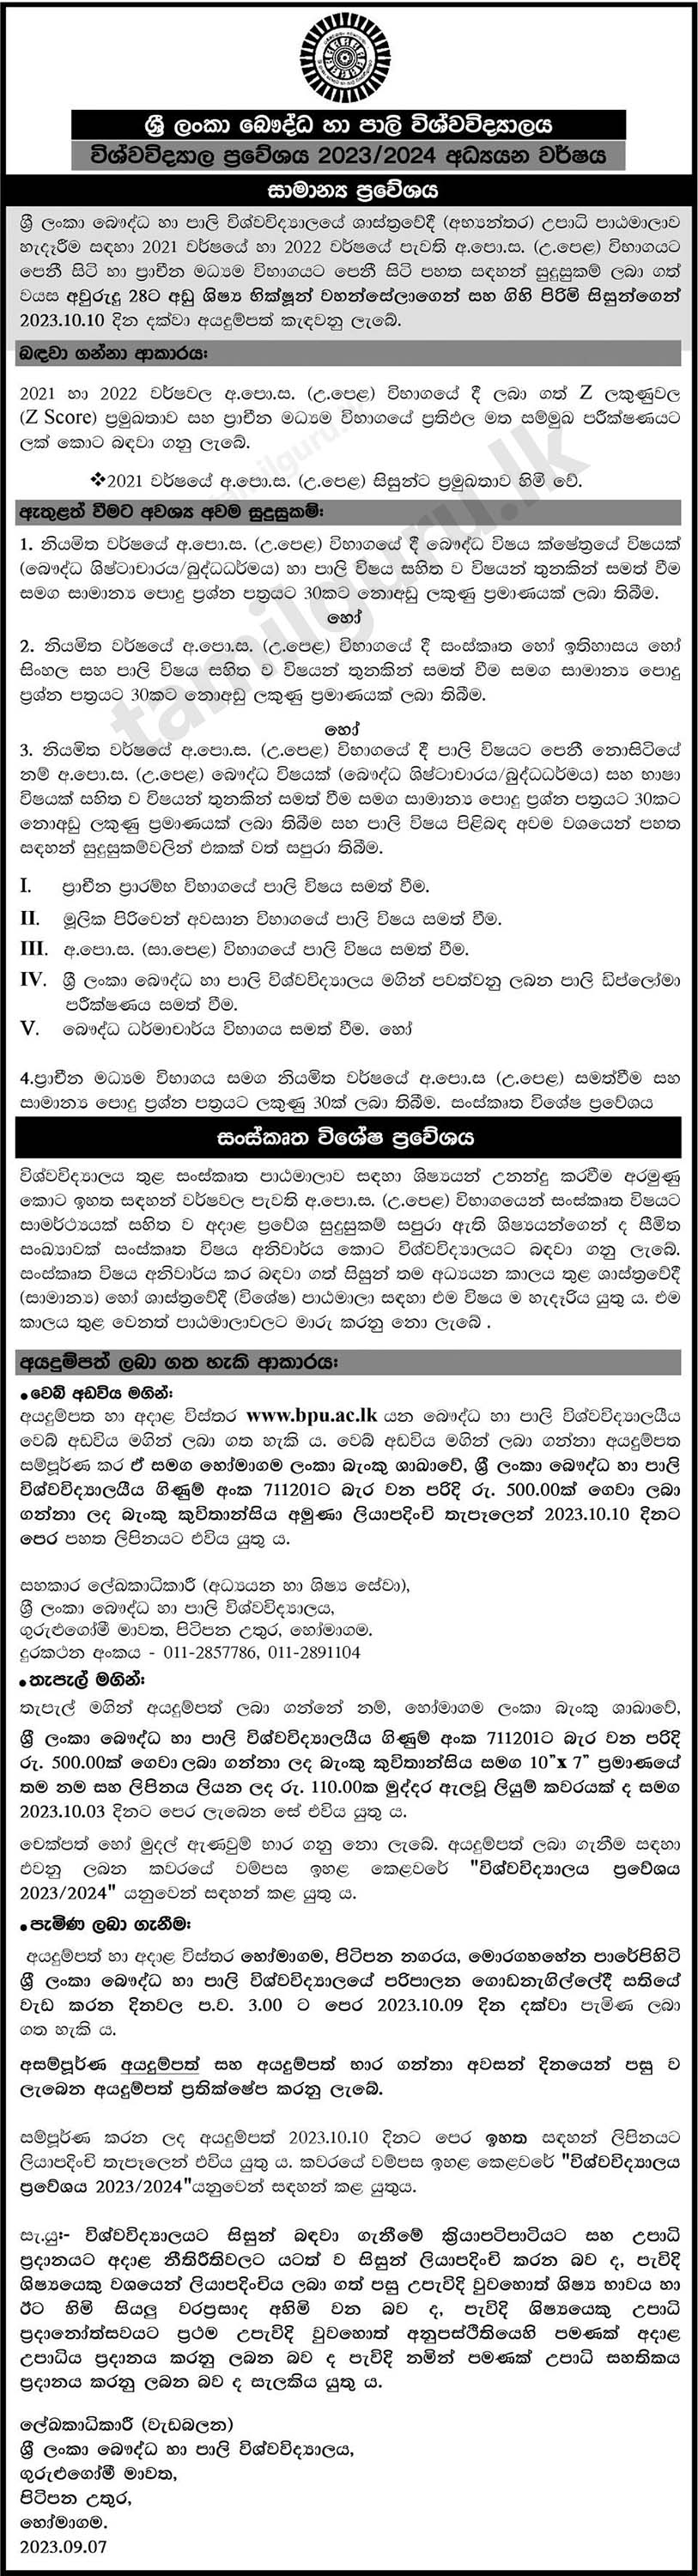 Buddhist & Pali University (BPU) - Application for University Admission 2023/2024